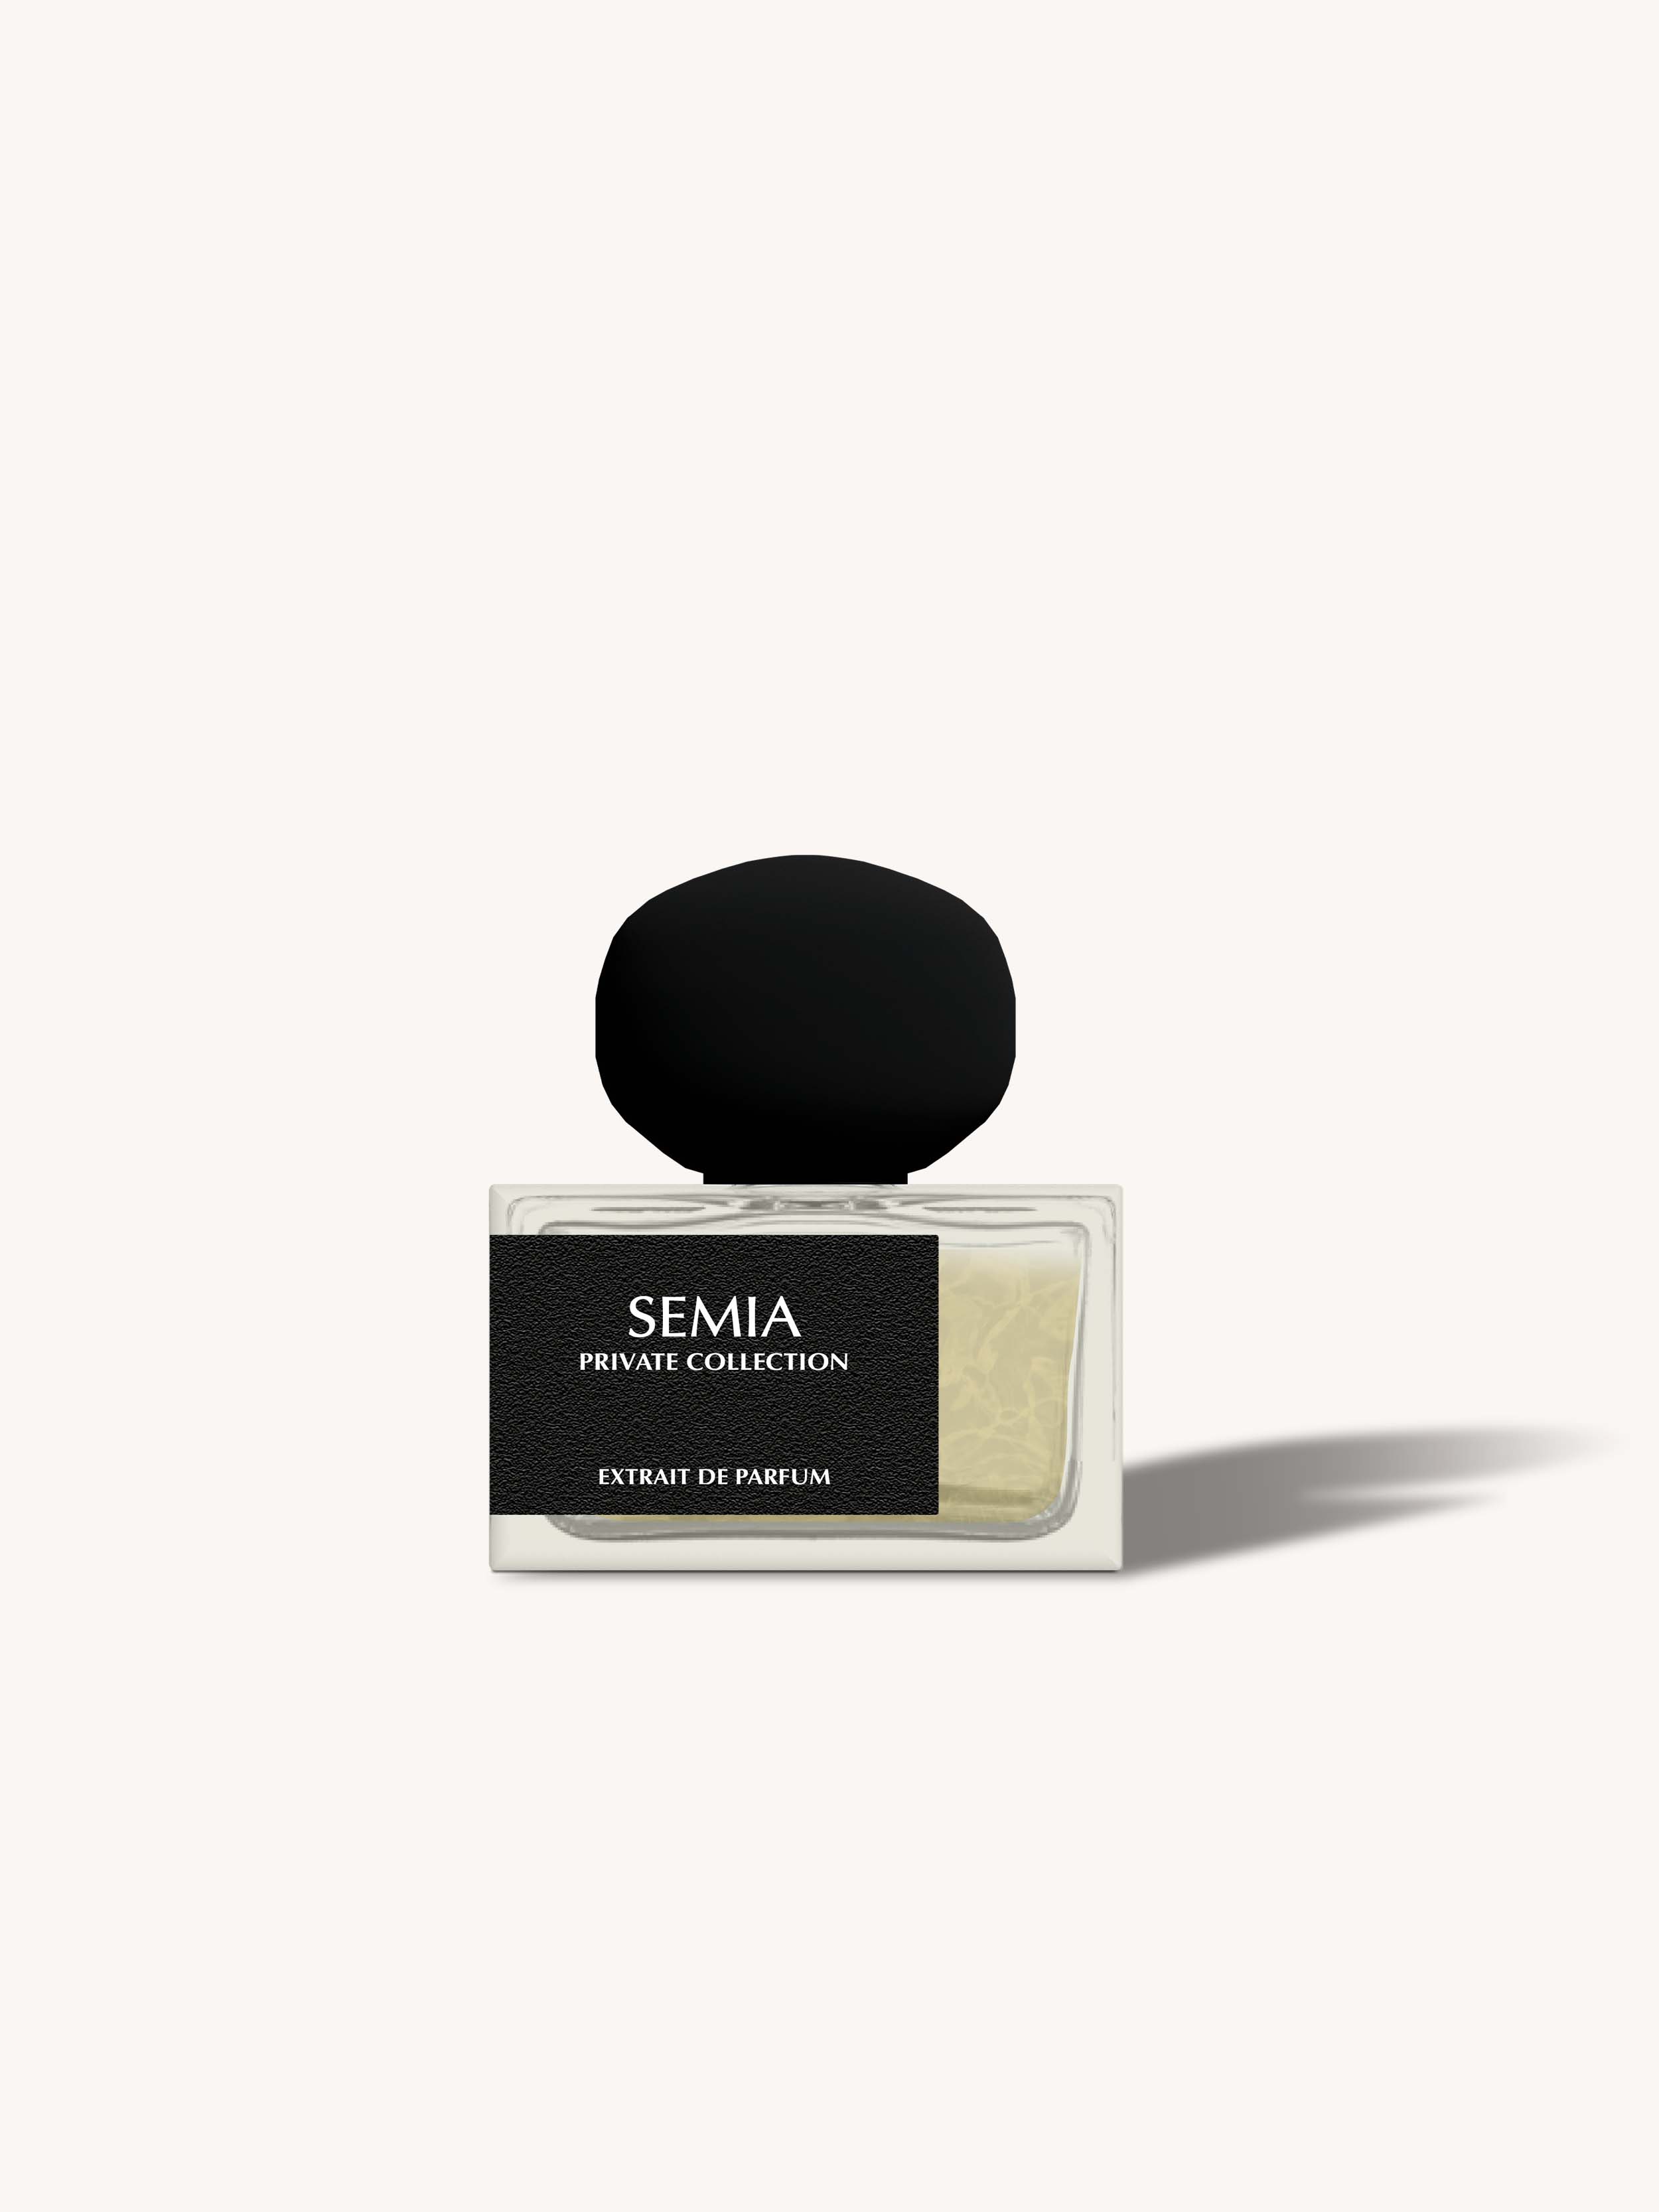 Semia - Private Collection